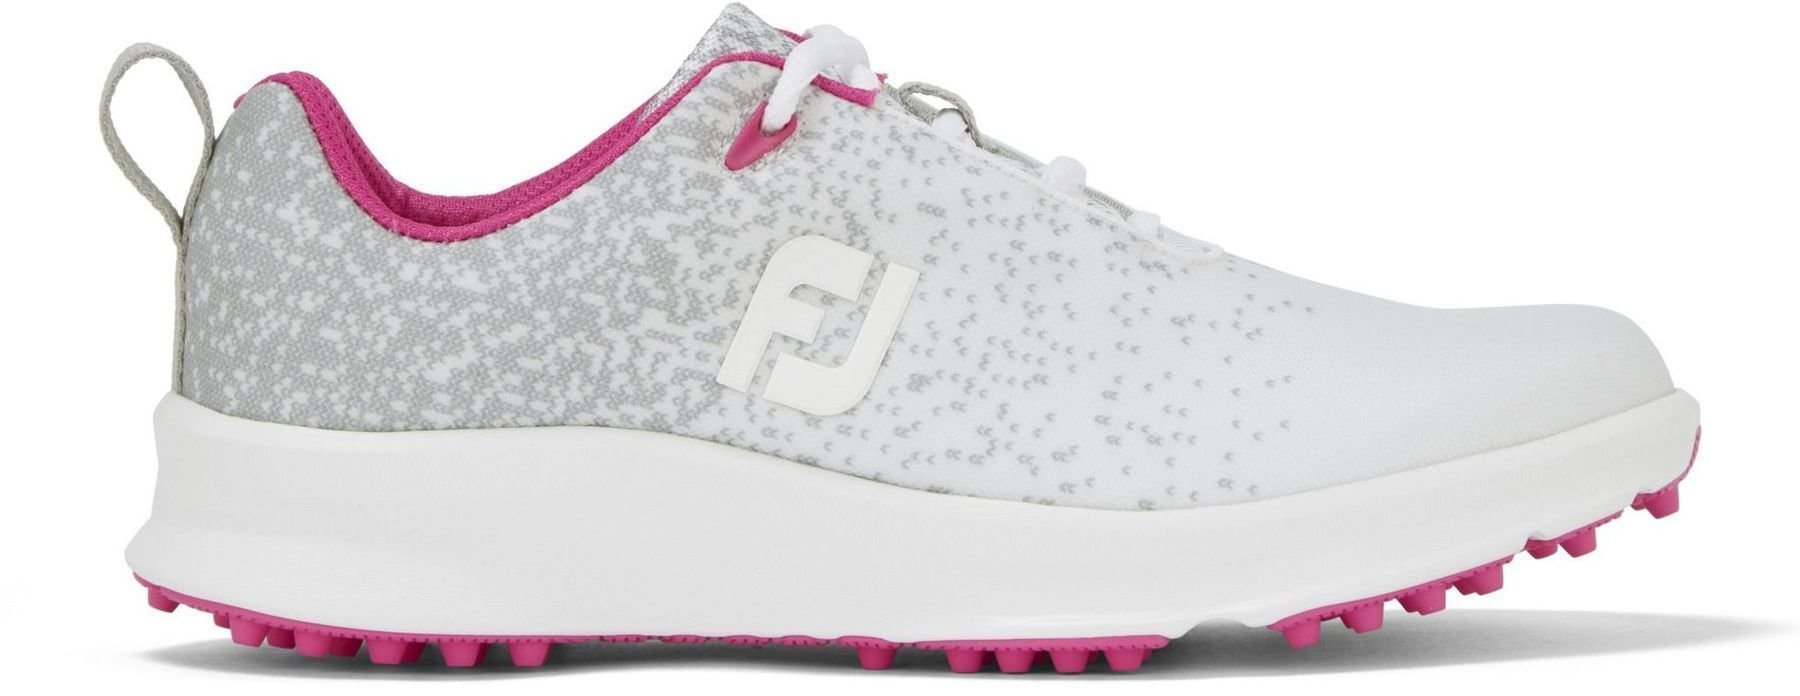 Calzado de golf de mujer Footjoy Leisure Silver/White/Fuchsia 38